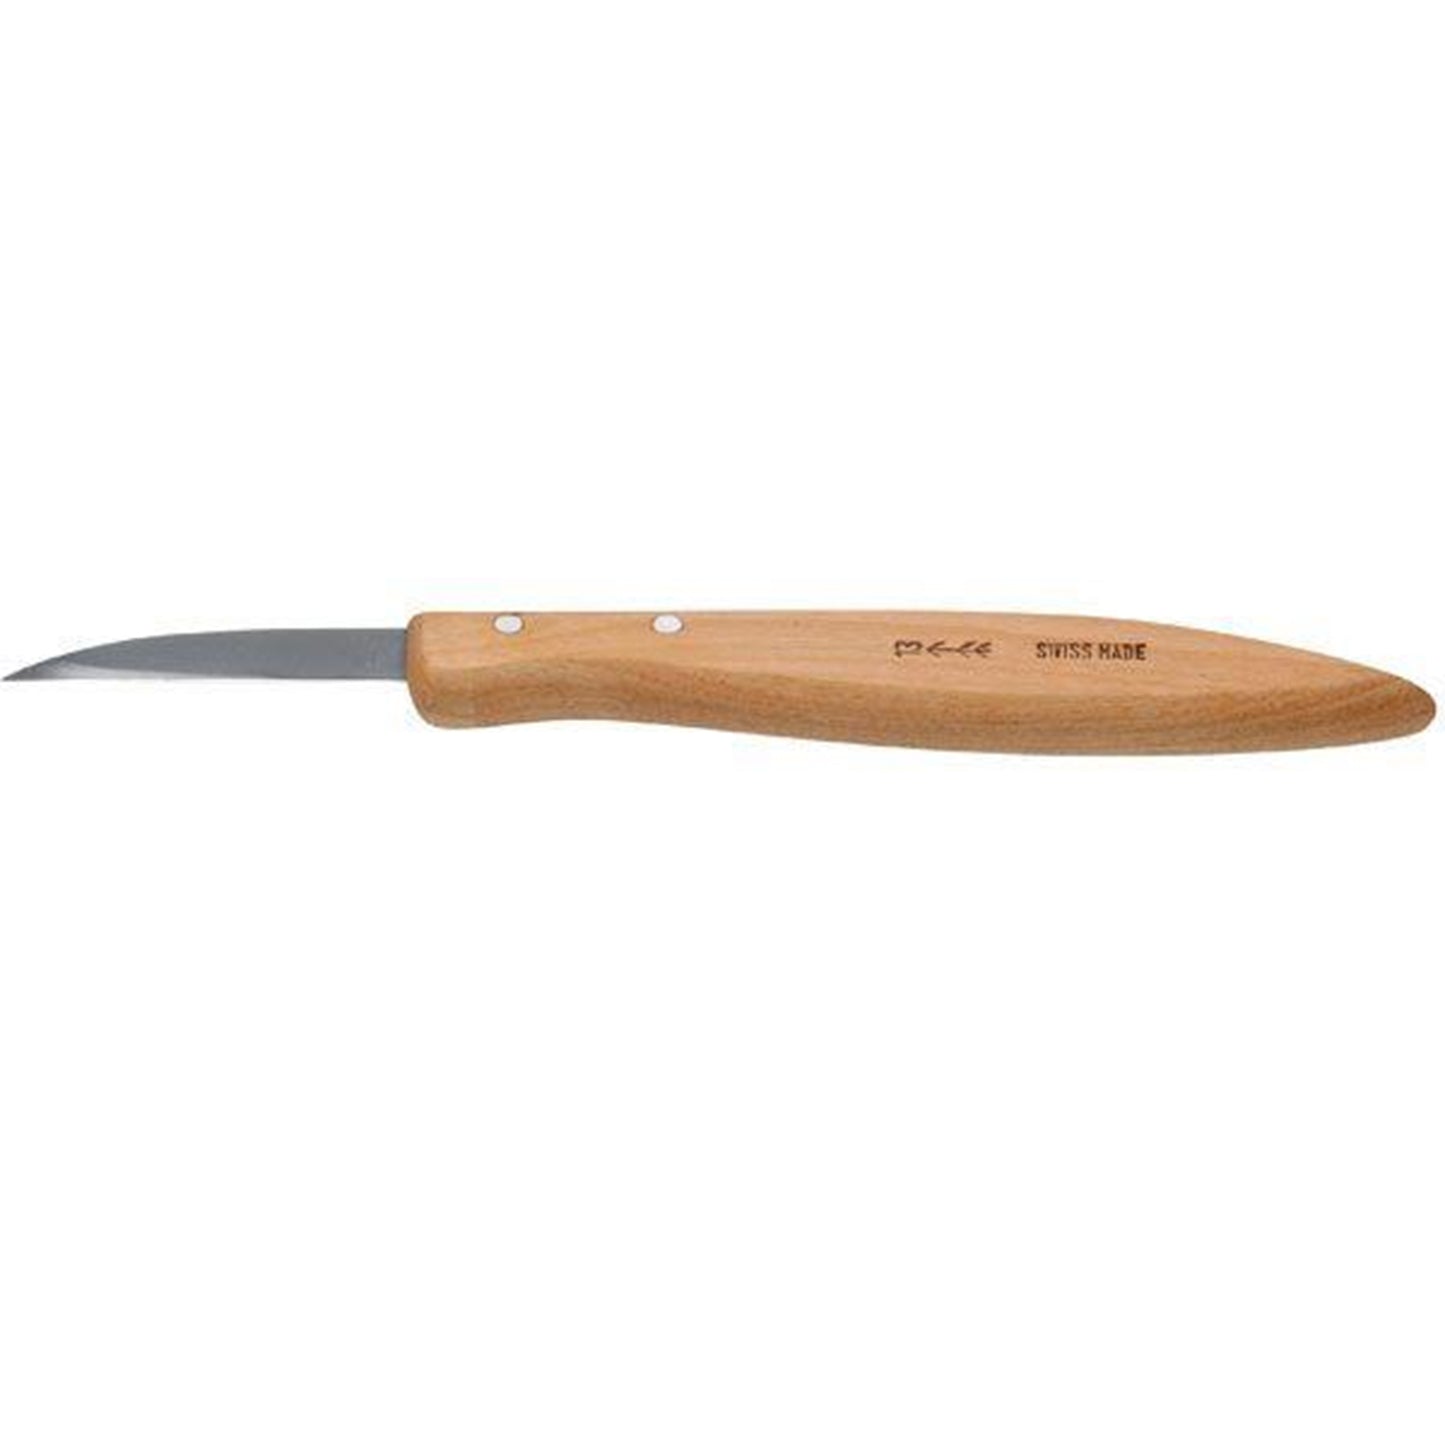 #13 CHIP CARVING KNIFE alt 0